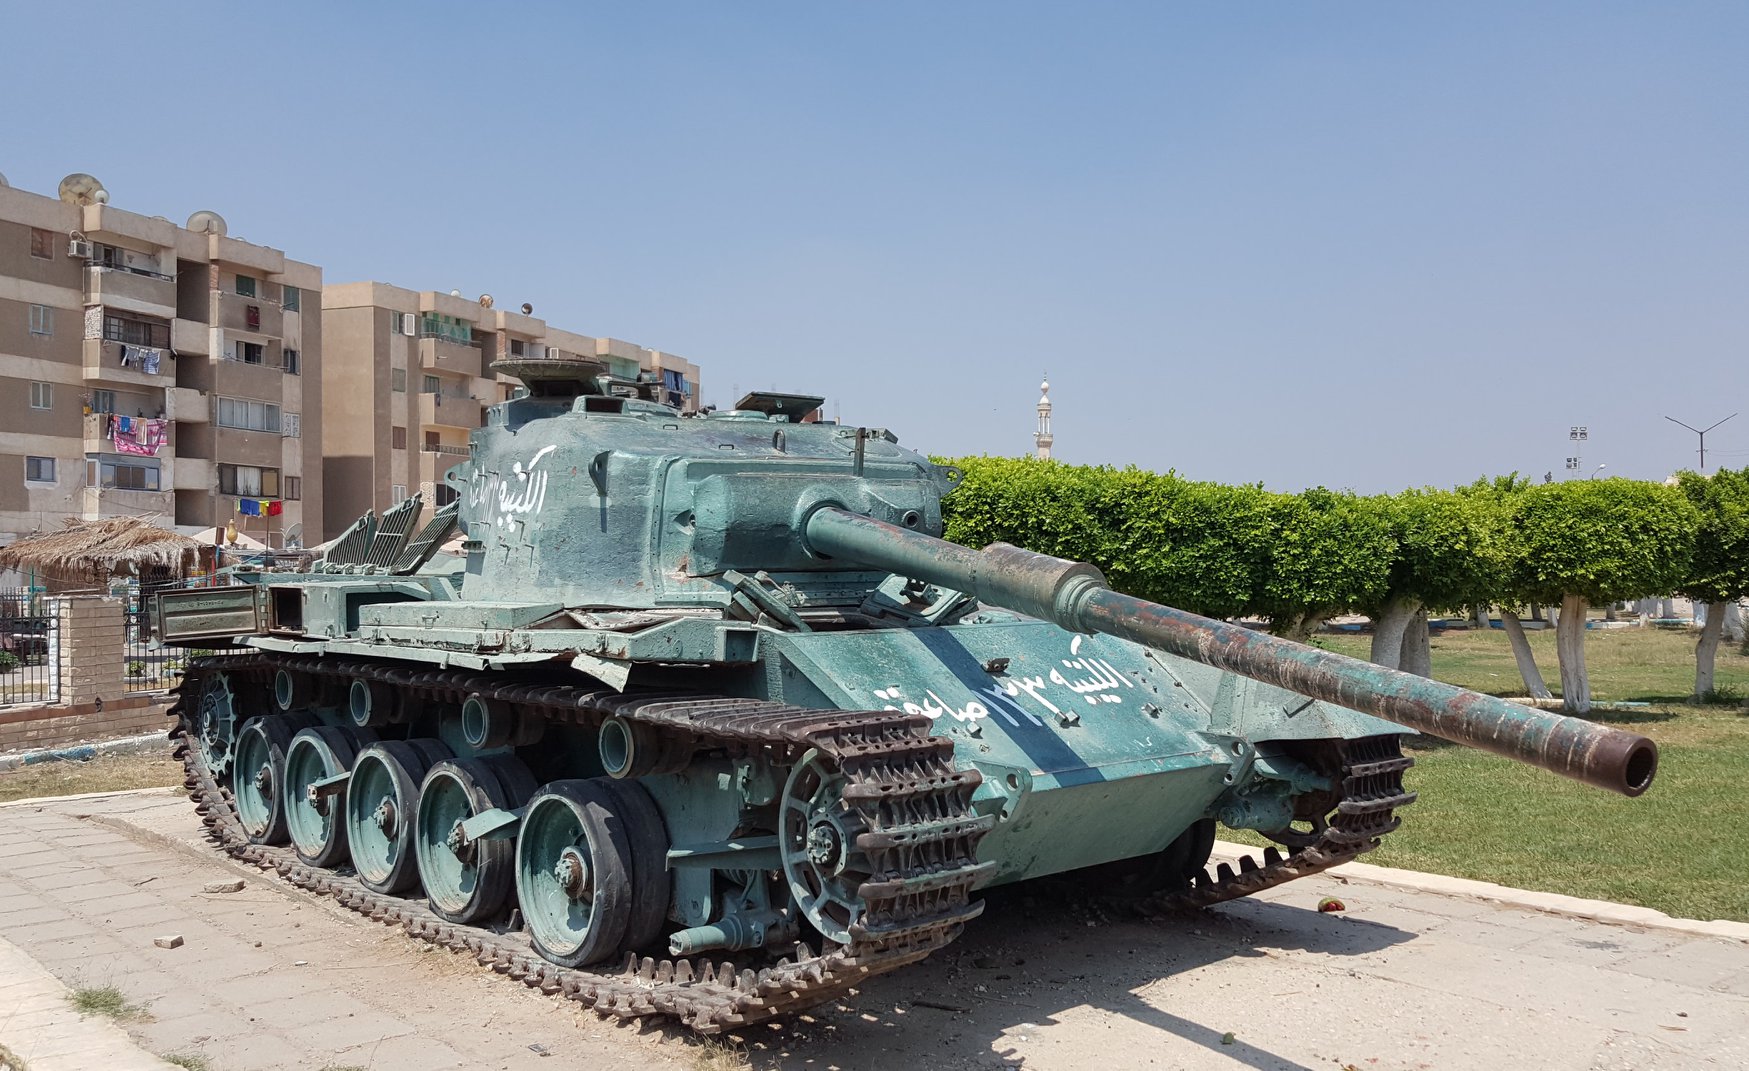 Abu Atwa Tank Museum